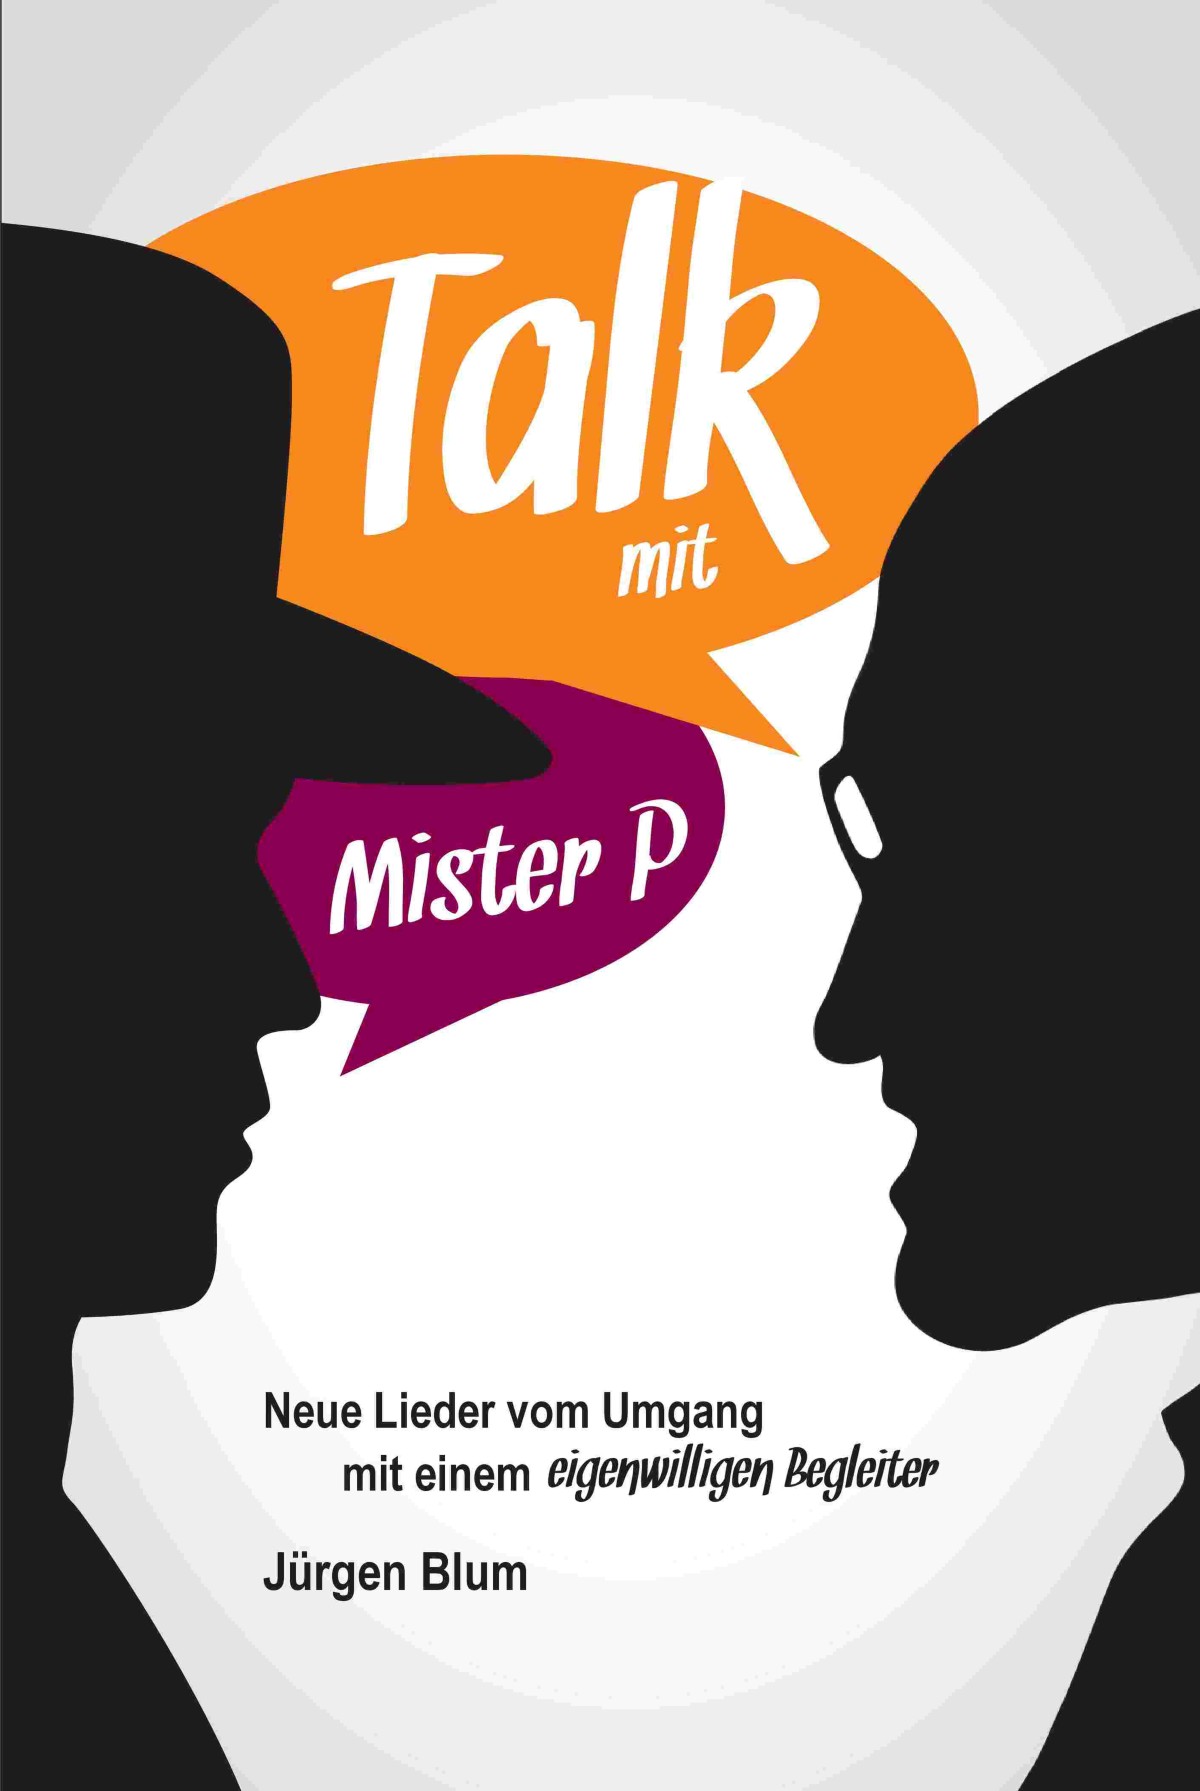 Titelbild "Talk mit P"